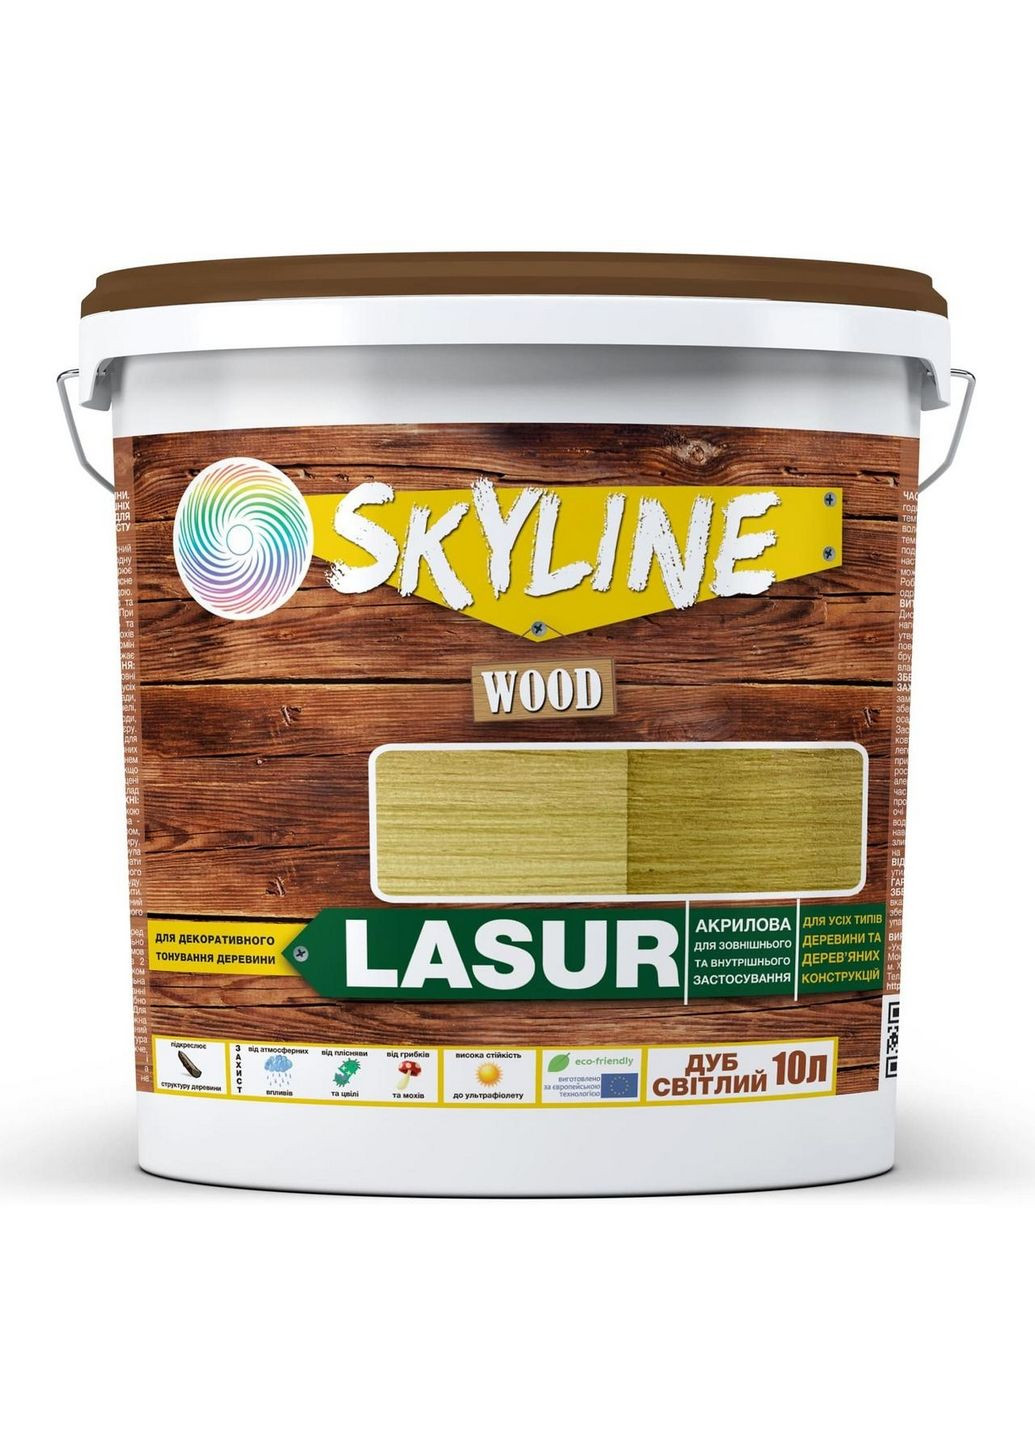 Лазурь декоративно-защитная для обработки дерева LASUR Wood Дуб светлый 10л SkyLine (283327804)